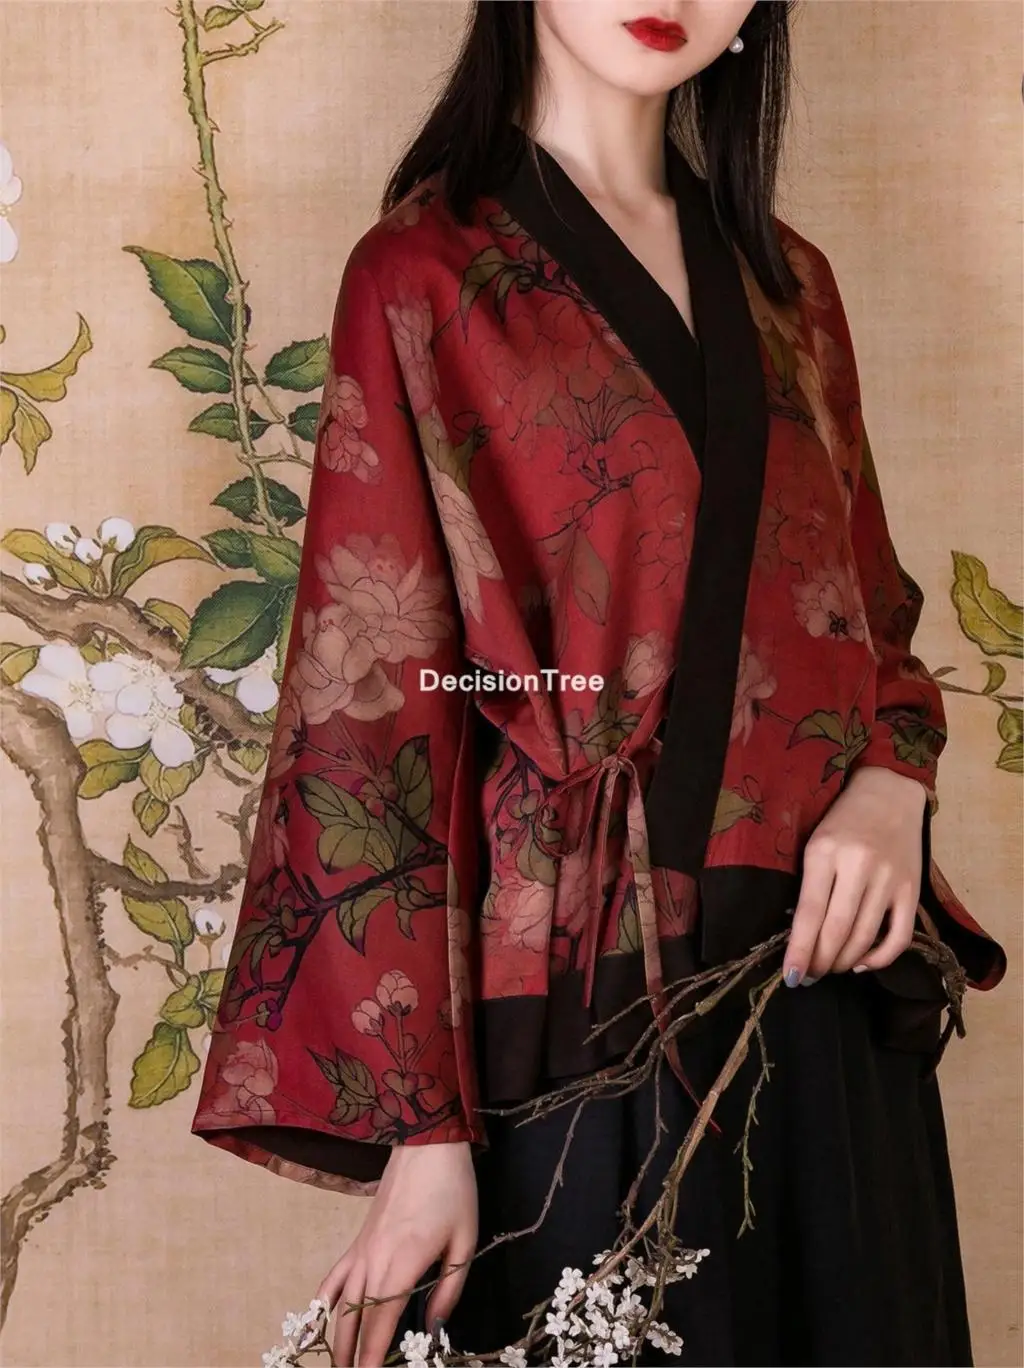 

Блузка Женская атласная в традиционном китайском стиле, повседневная классическая рубашка, топ в стиле Ципао с винтажным принтом, топ в сти...